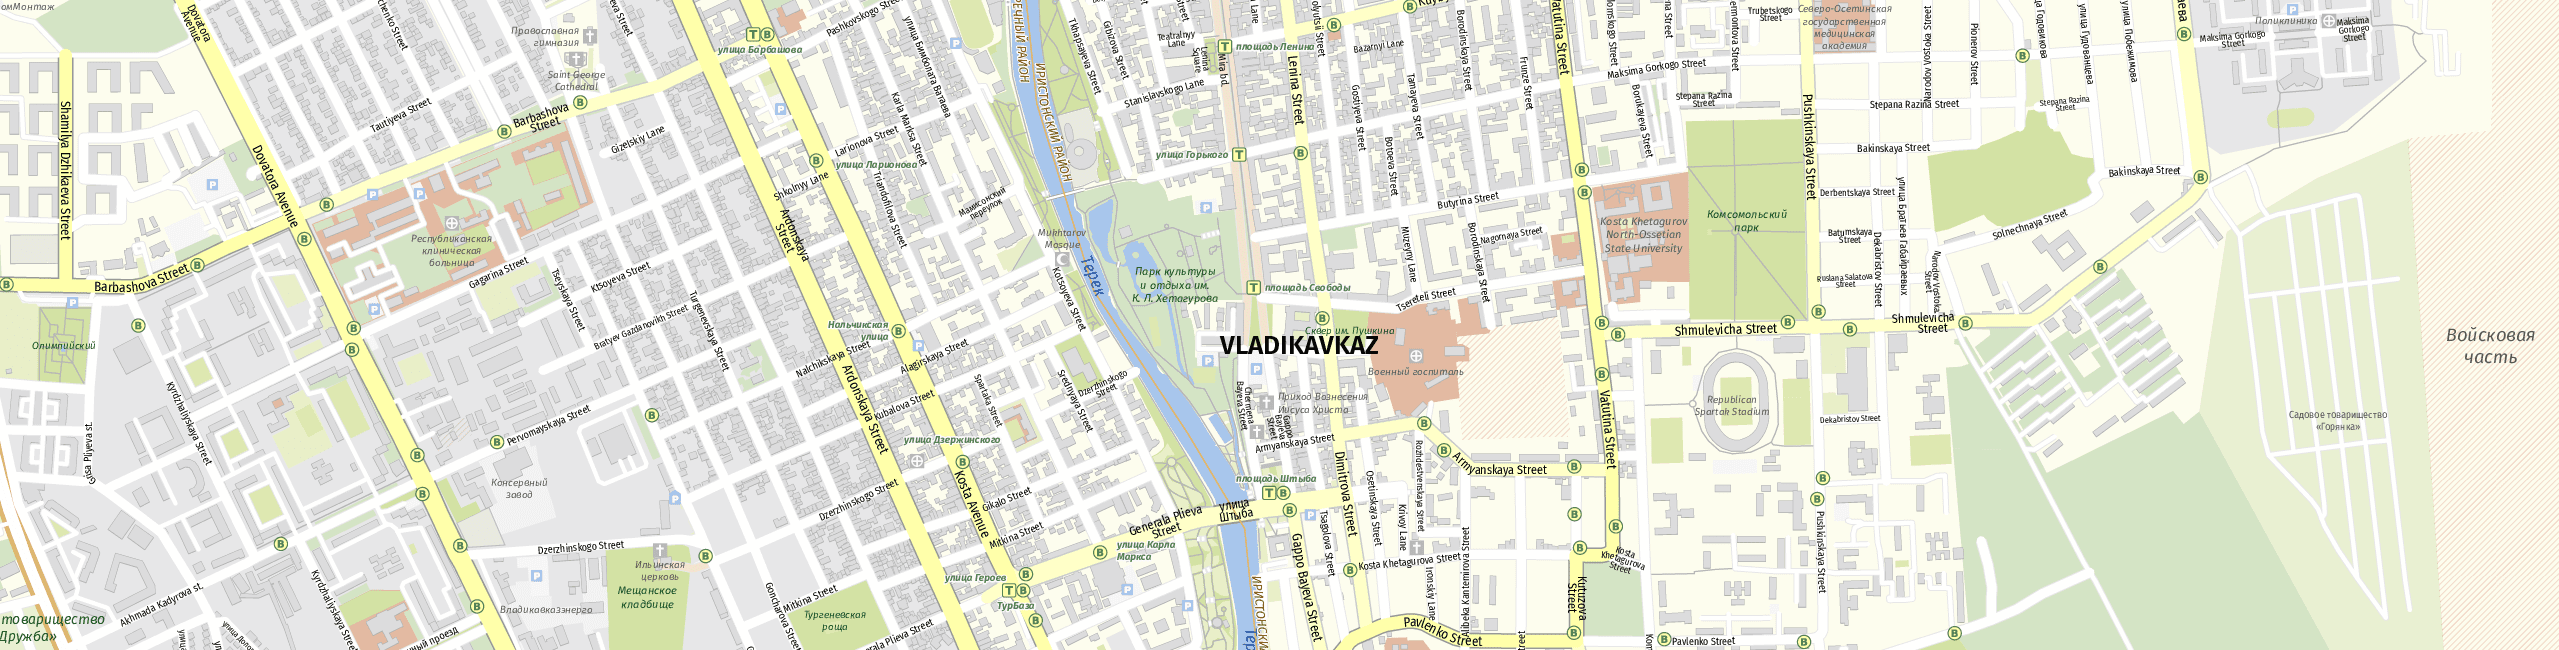 Stadtplan Wladikawkas zum Downloaden.